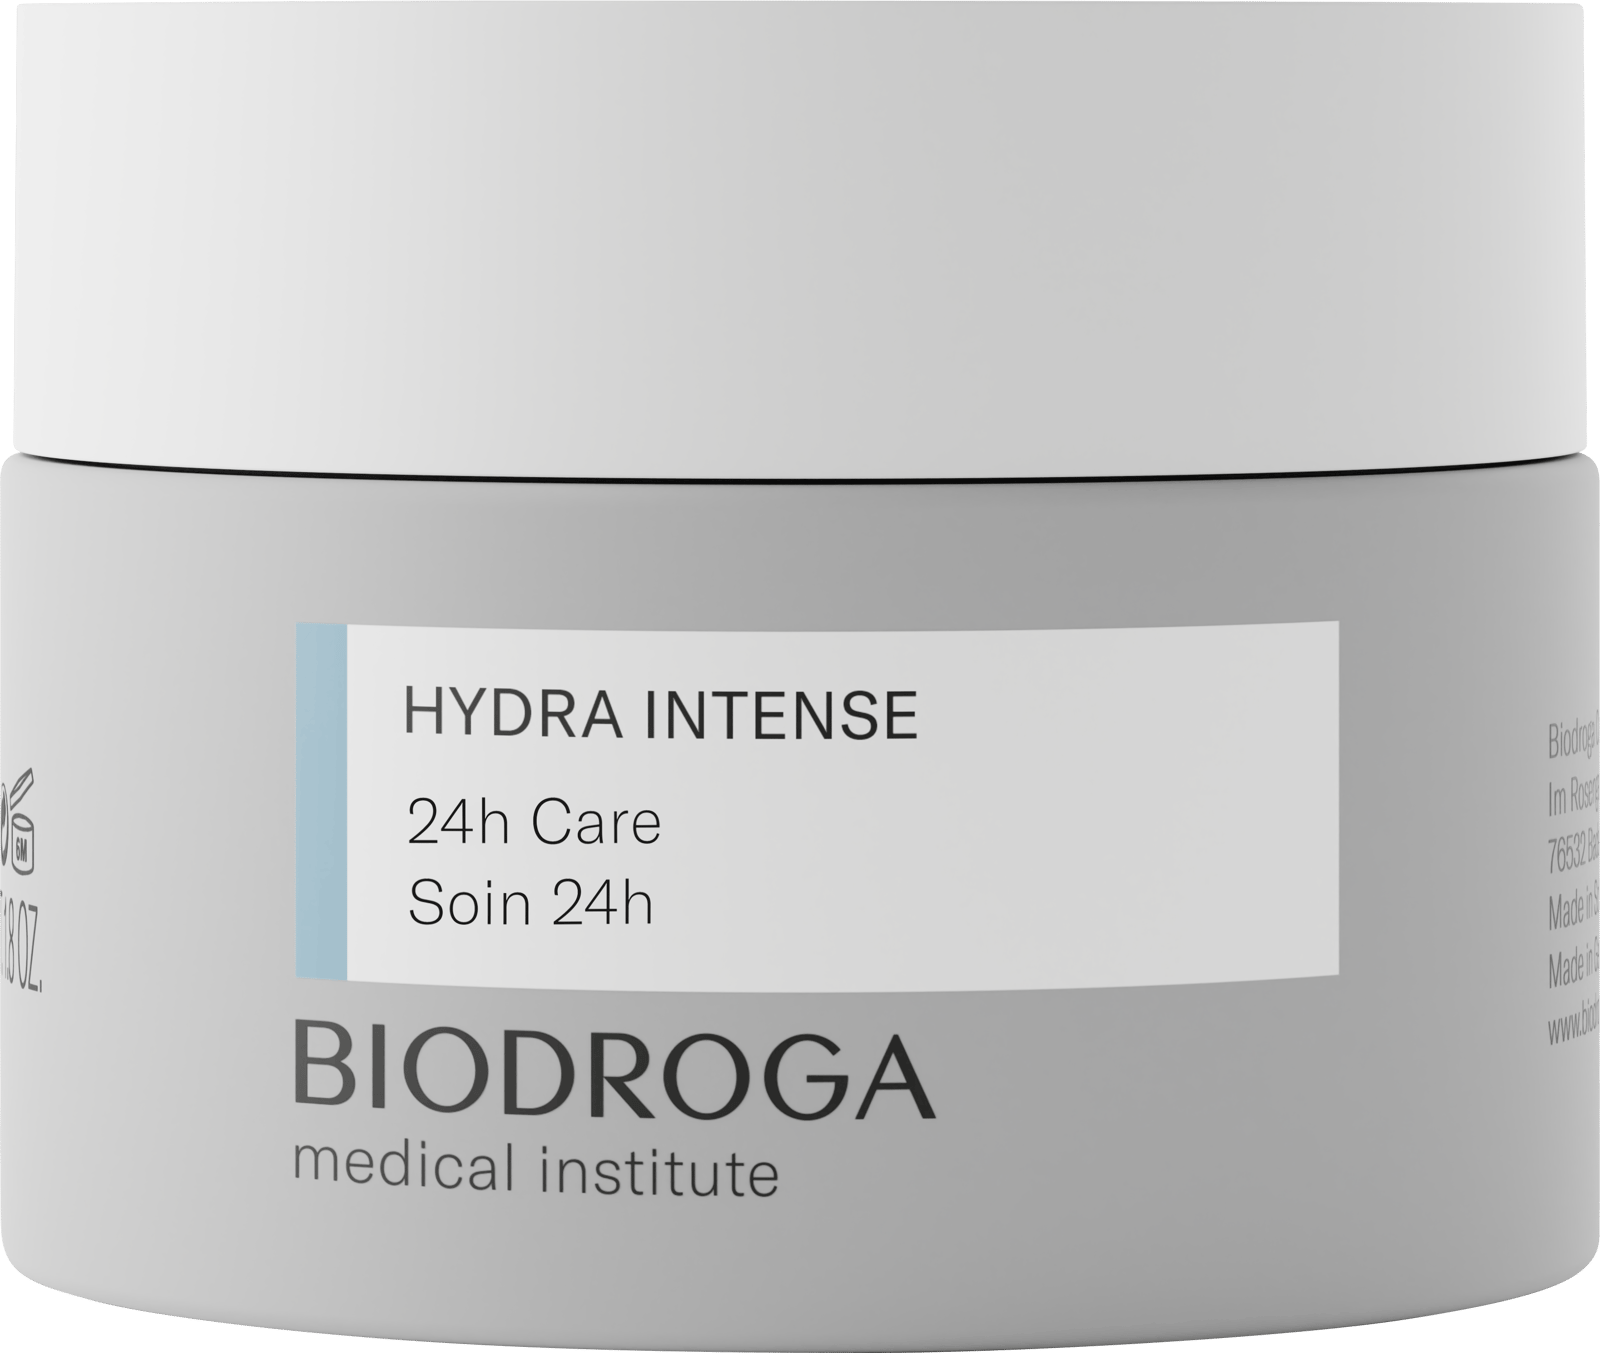 BIODROGA Medical Institute Hydra Intense 24h Care